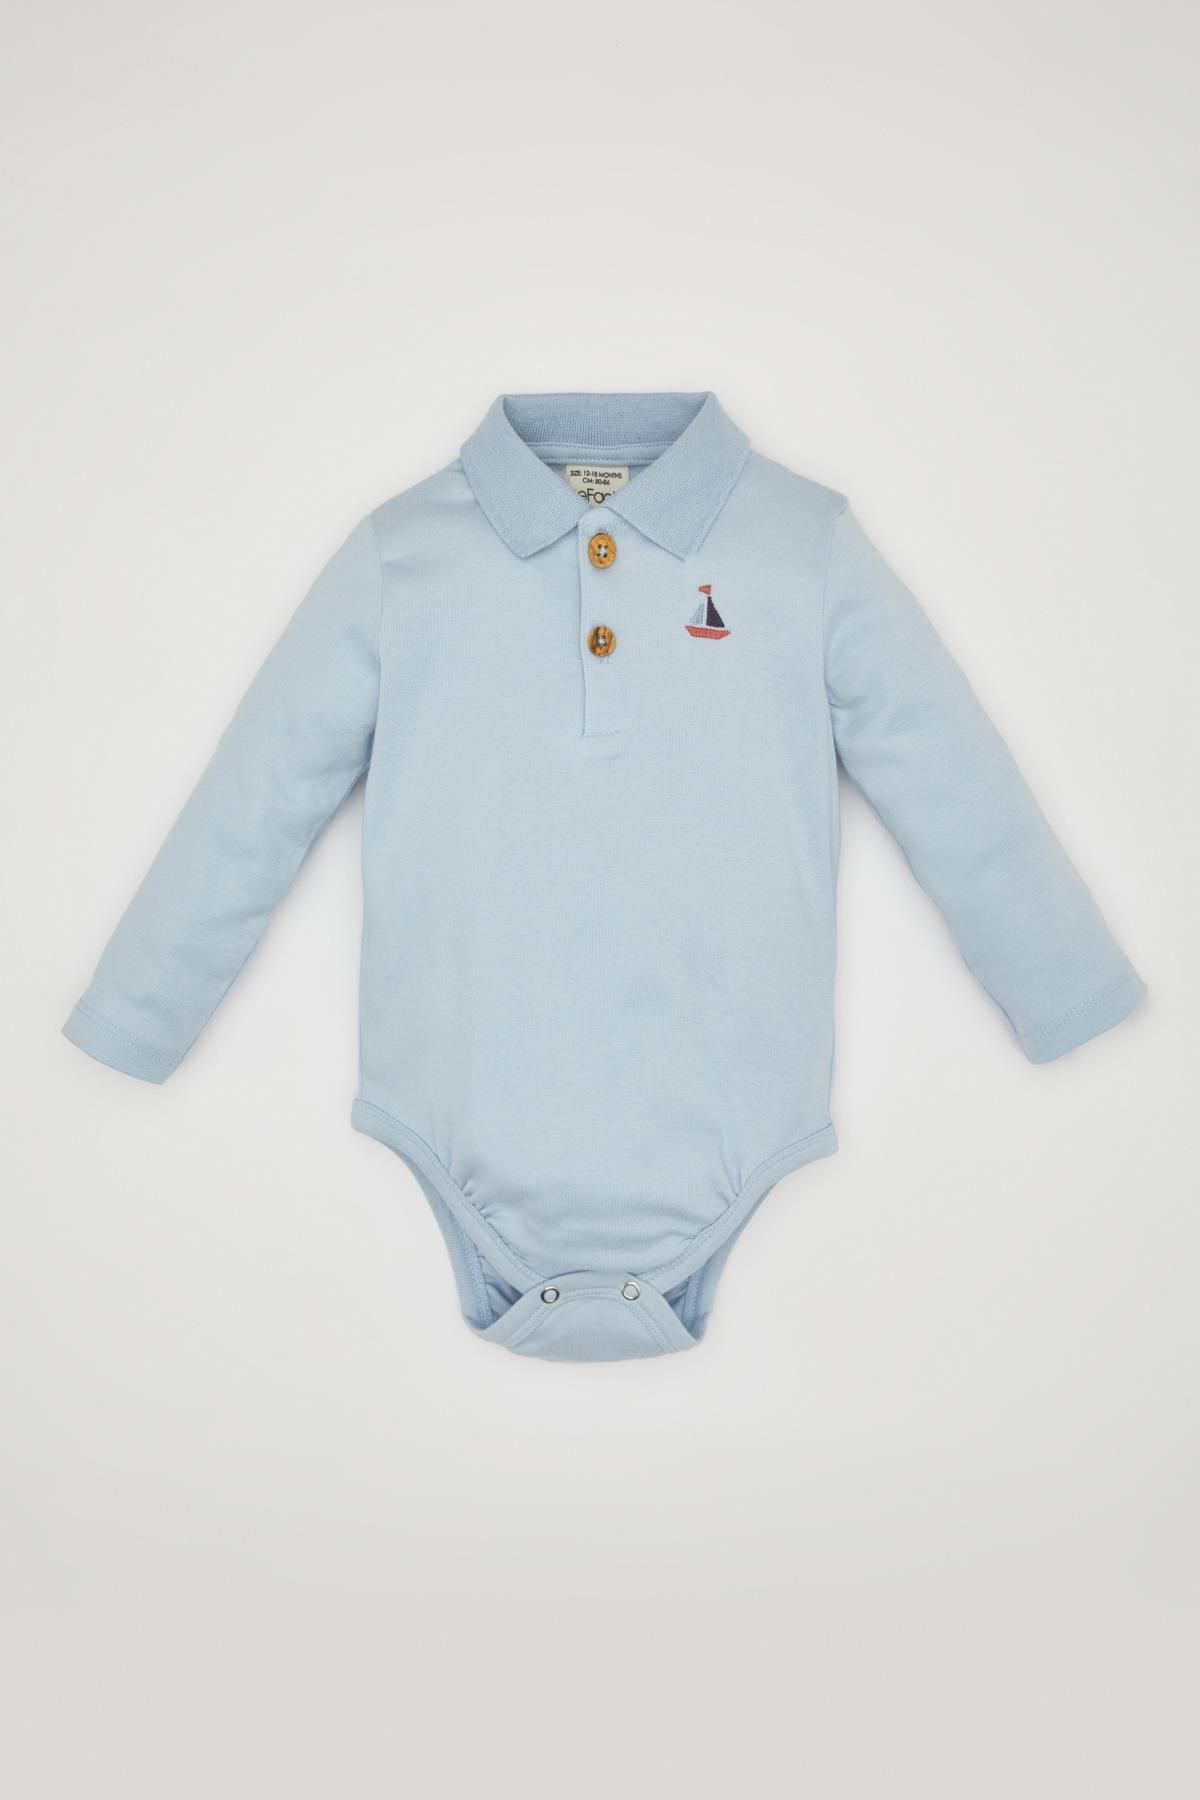 Defacto Erkek Bebek Yeni Doğan Polo Yaka Uzun Kollu Çıtçıtlı Body C1552A524SM